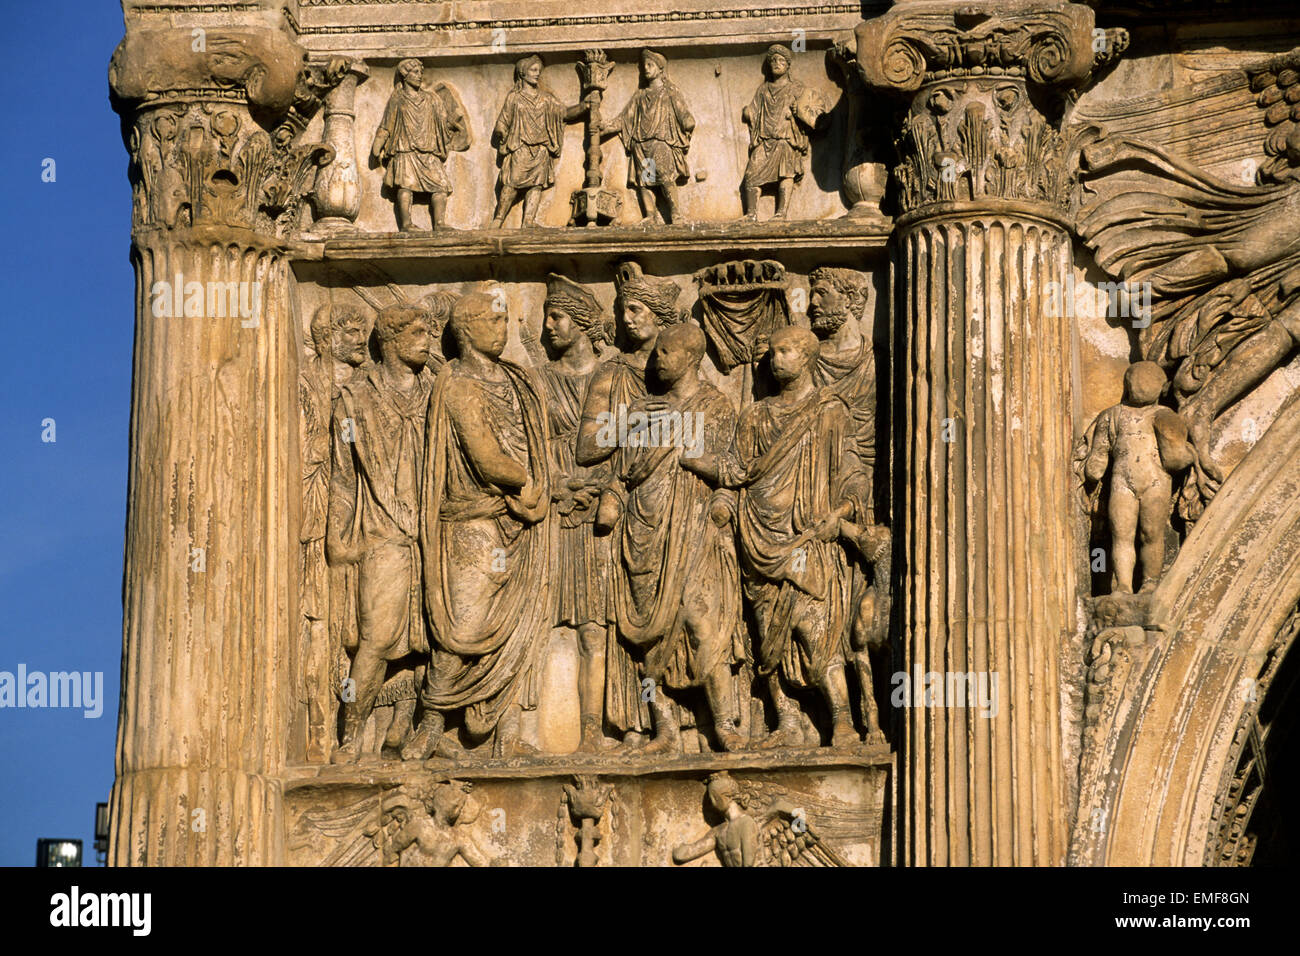 Italie, Campanie, Bénévent, arche de Trajan, bas relief romain de près Banque D'Images